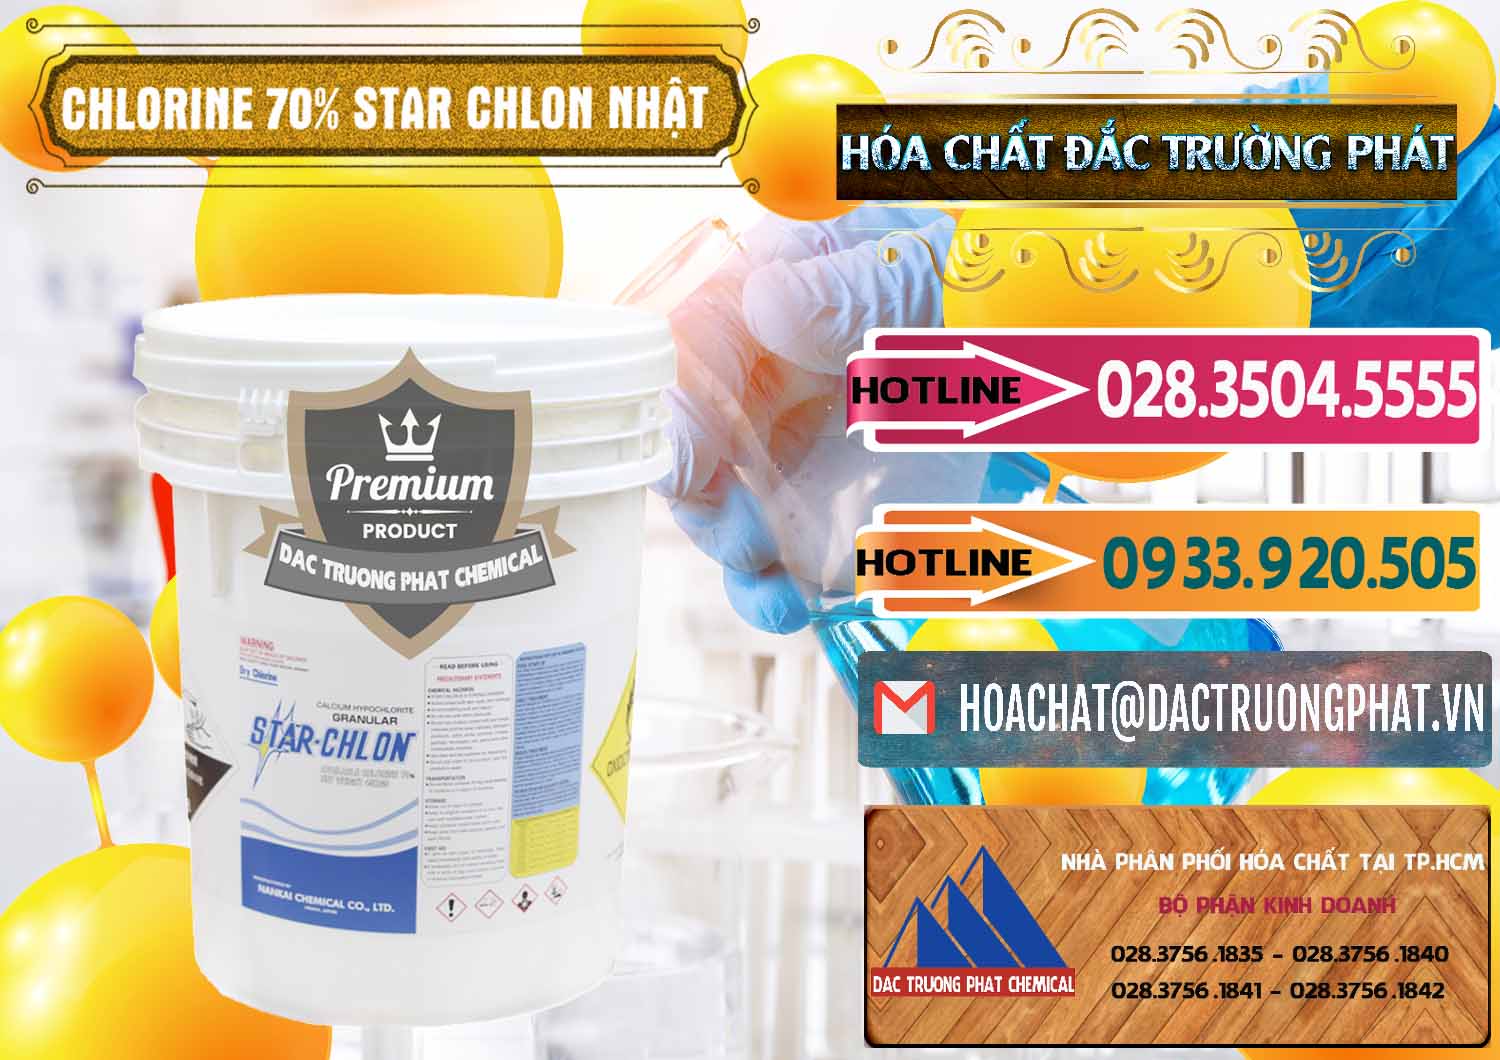 Cty chuyên bán và phân phối Clorin – Chlorine 70% Star Chlon Nhật Bản Japan - 0243 - Cty chuyên nhập khẩu _ cung cấp hóa chất tại TP.HCM - dactruongphat.vn